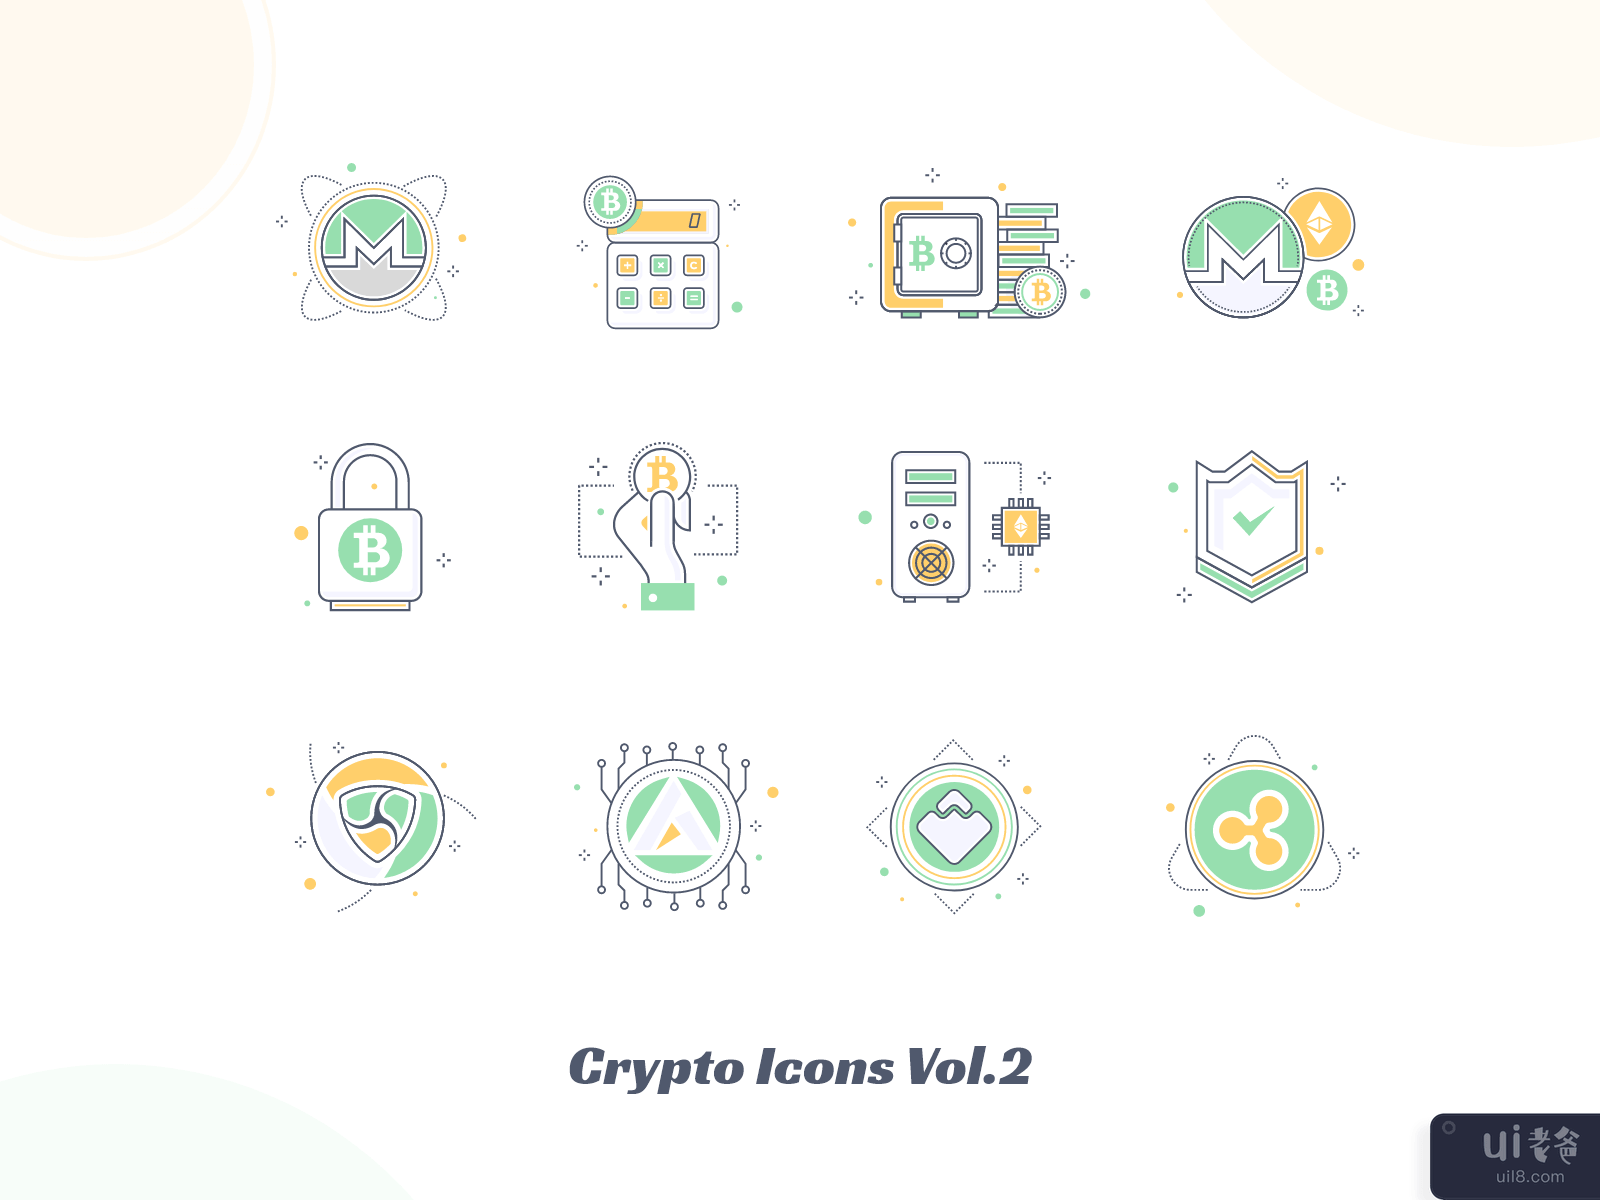 加密图标 Vol.2(Crypto Icons Vol.2)插图